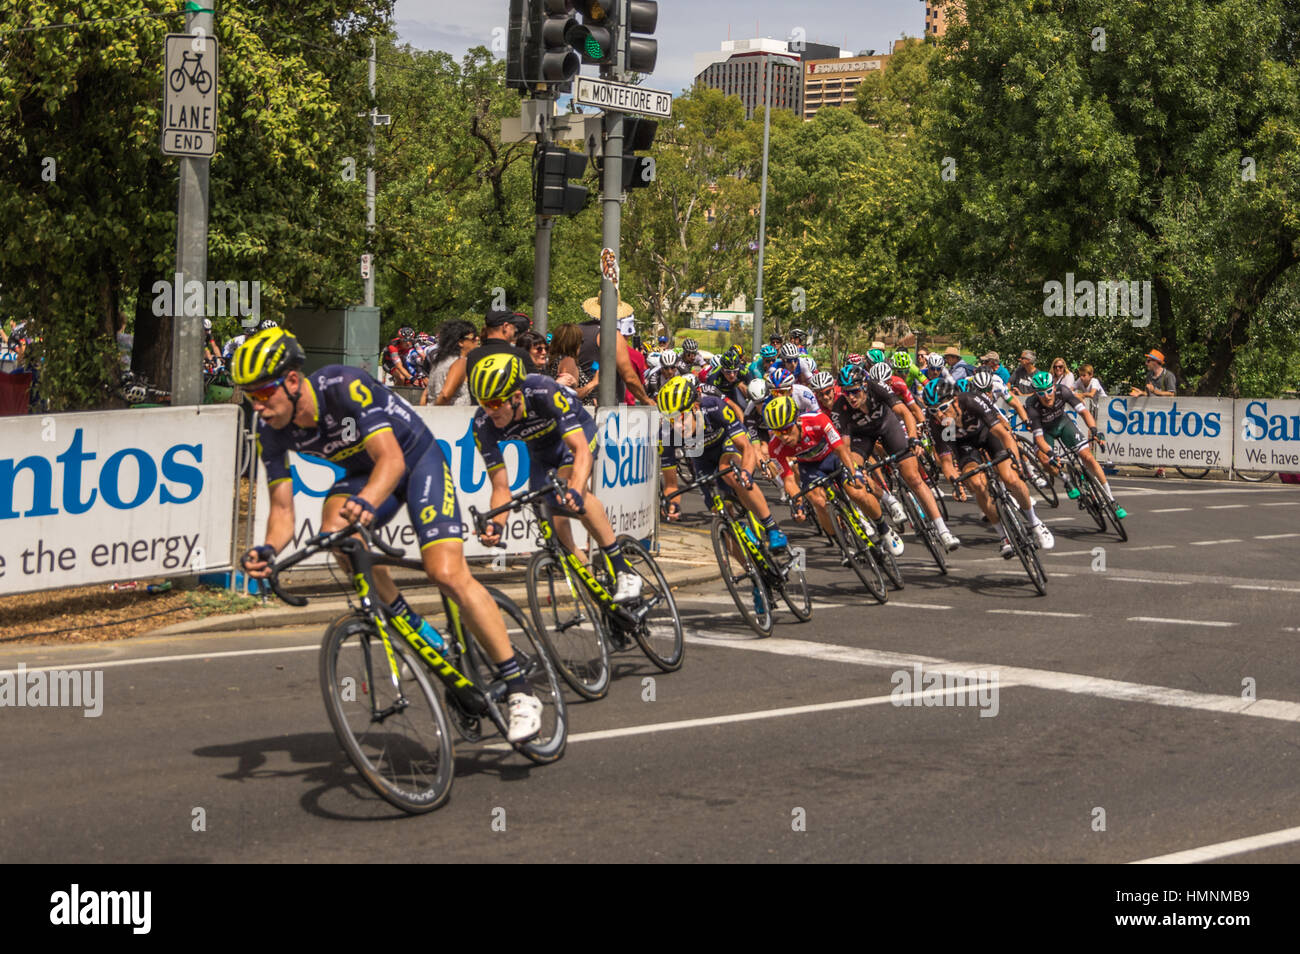 L'ultima tappa del Tour Down Under gare intorno al circuito di strada del centro di Adelaide su un bel giorno di estate Foto Stock